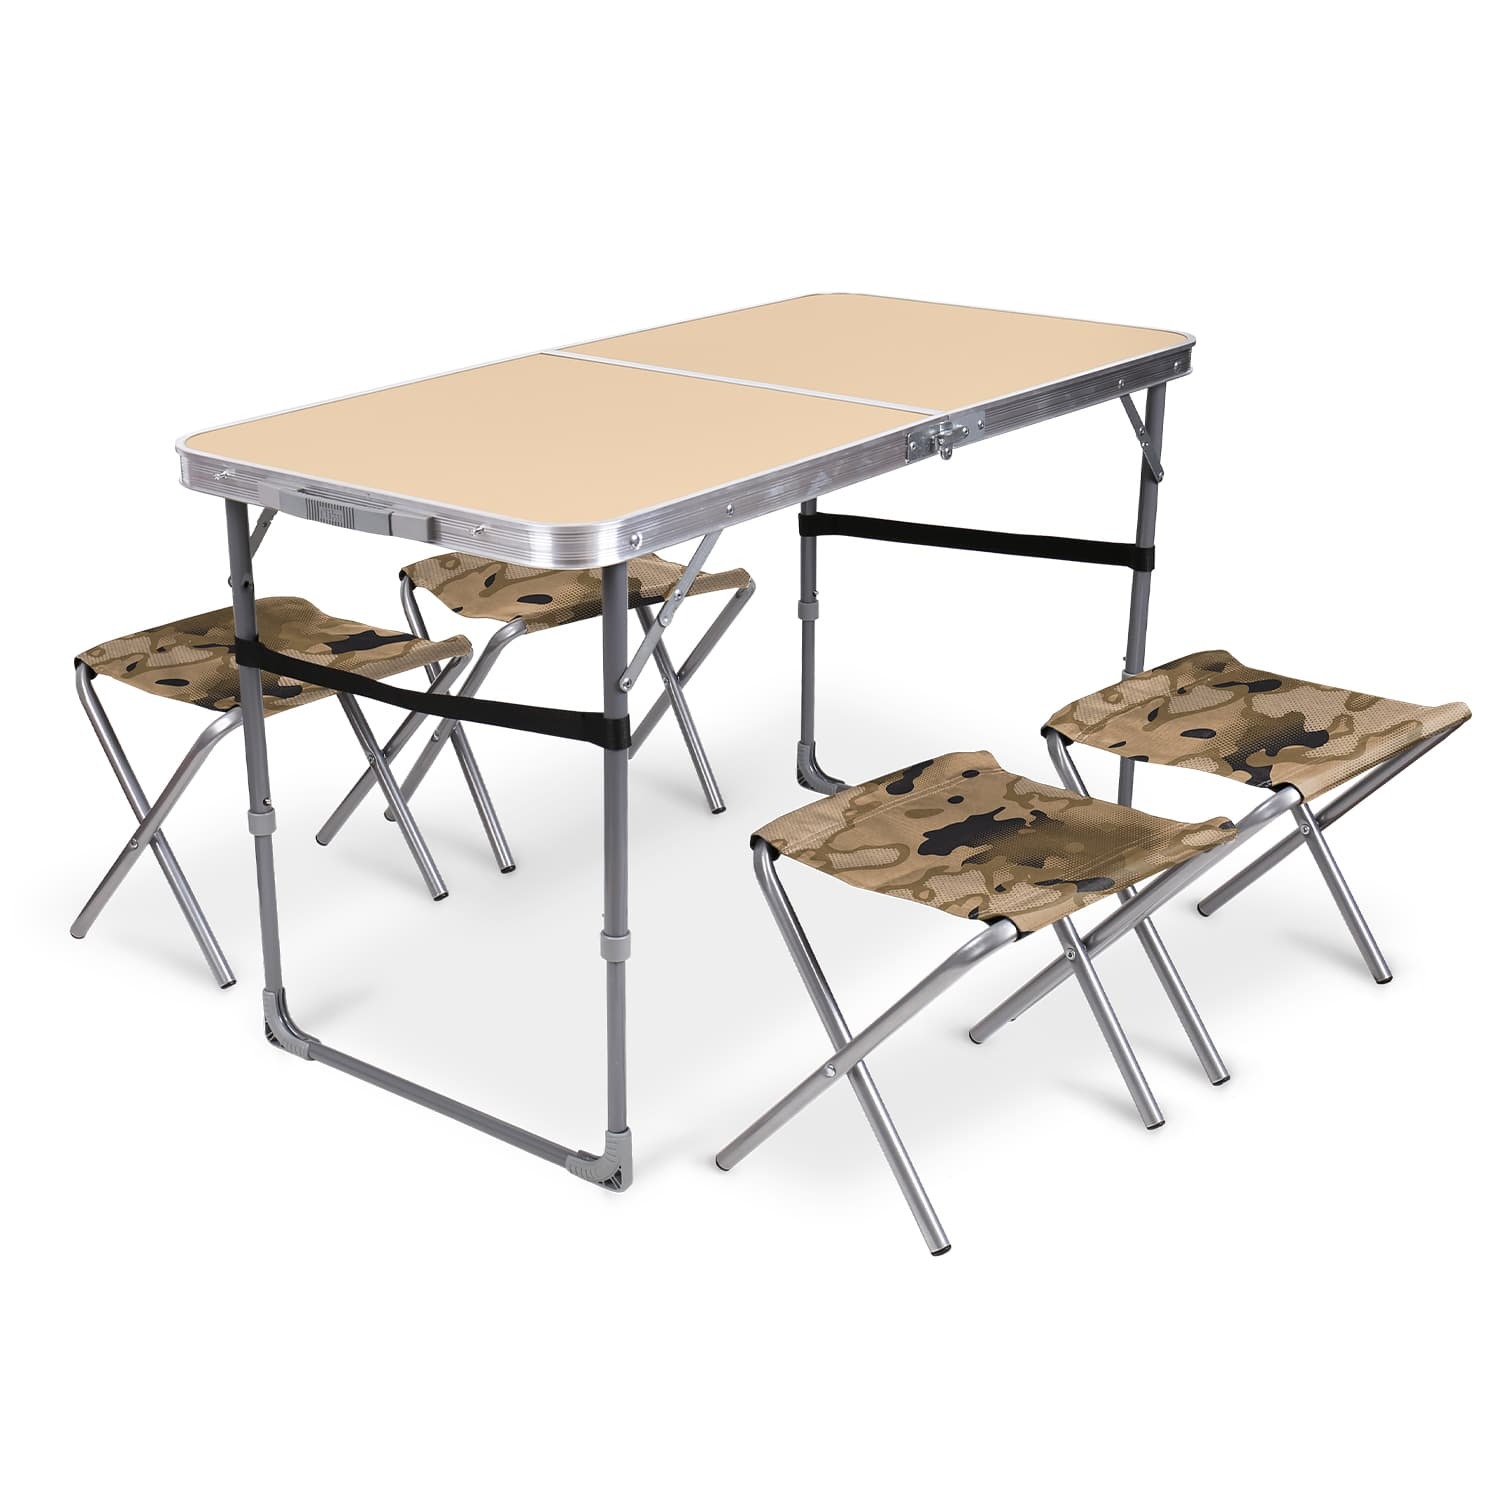 Комплект складной мебели Ника песочный стол с табуретами 5 предметов овальный складной стол комплект агро